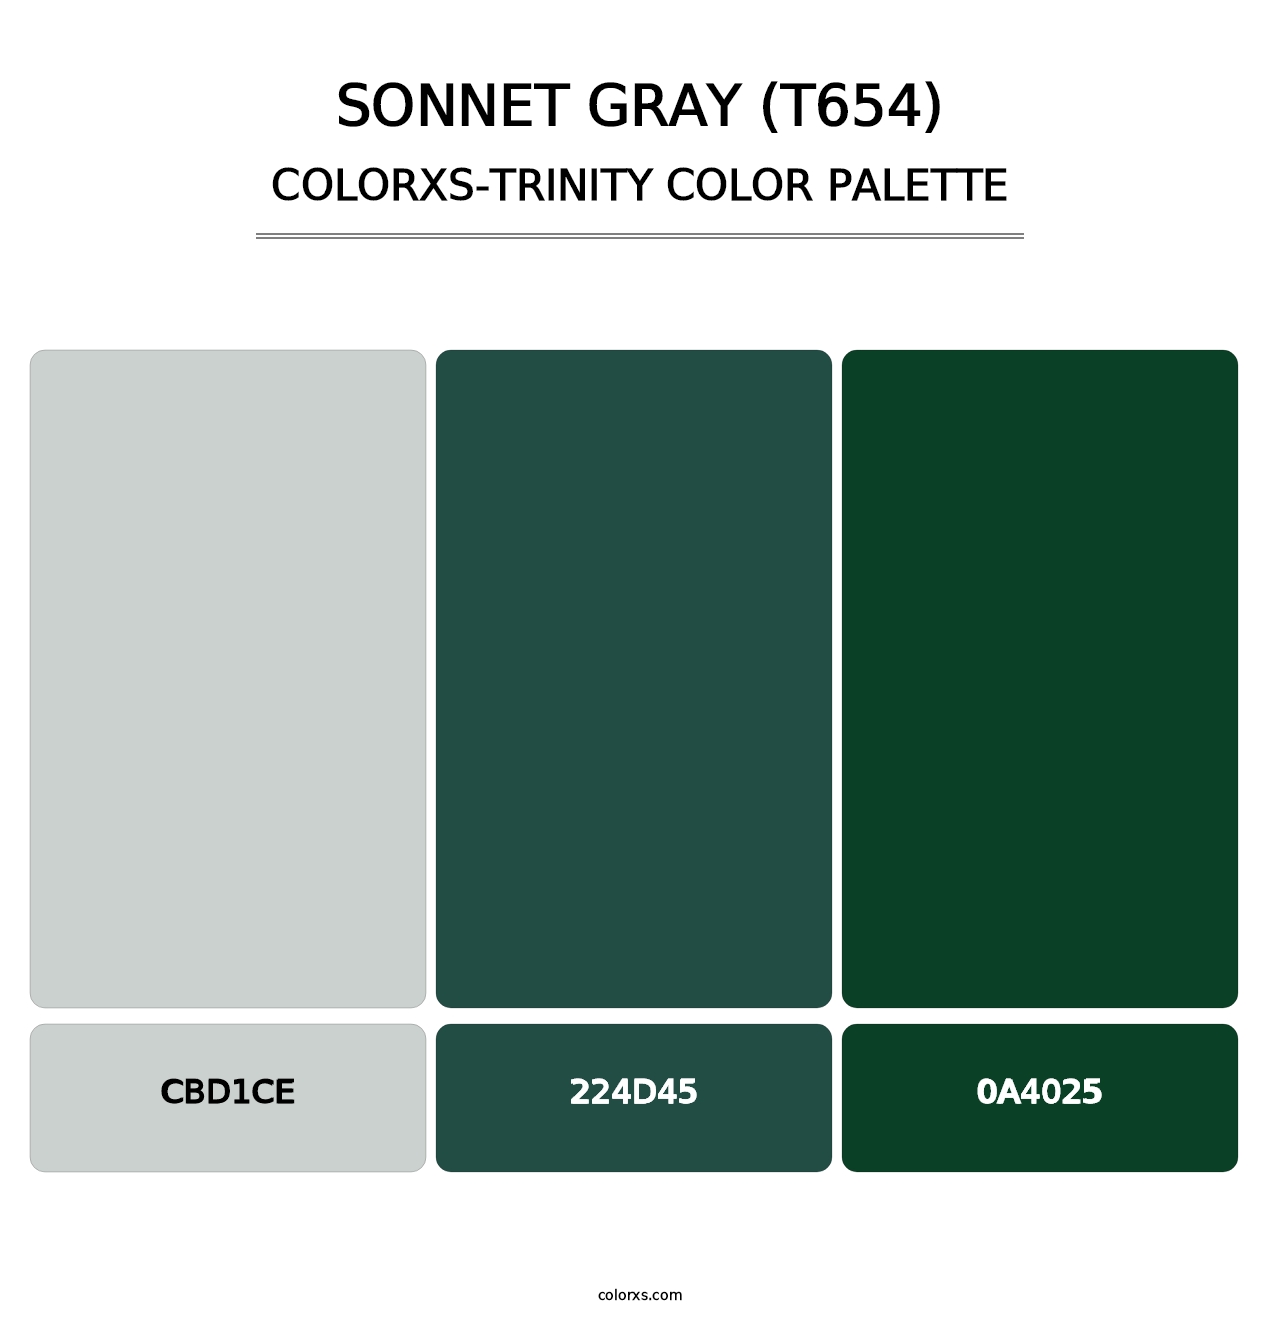 Sonnet Gray (T654) - Colorxs Trinity Palette